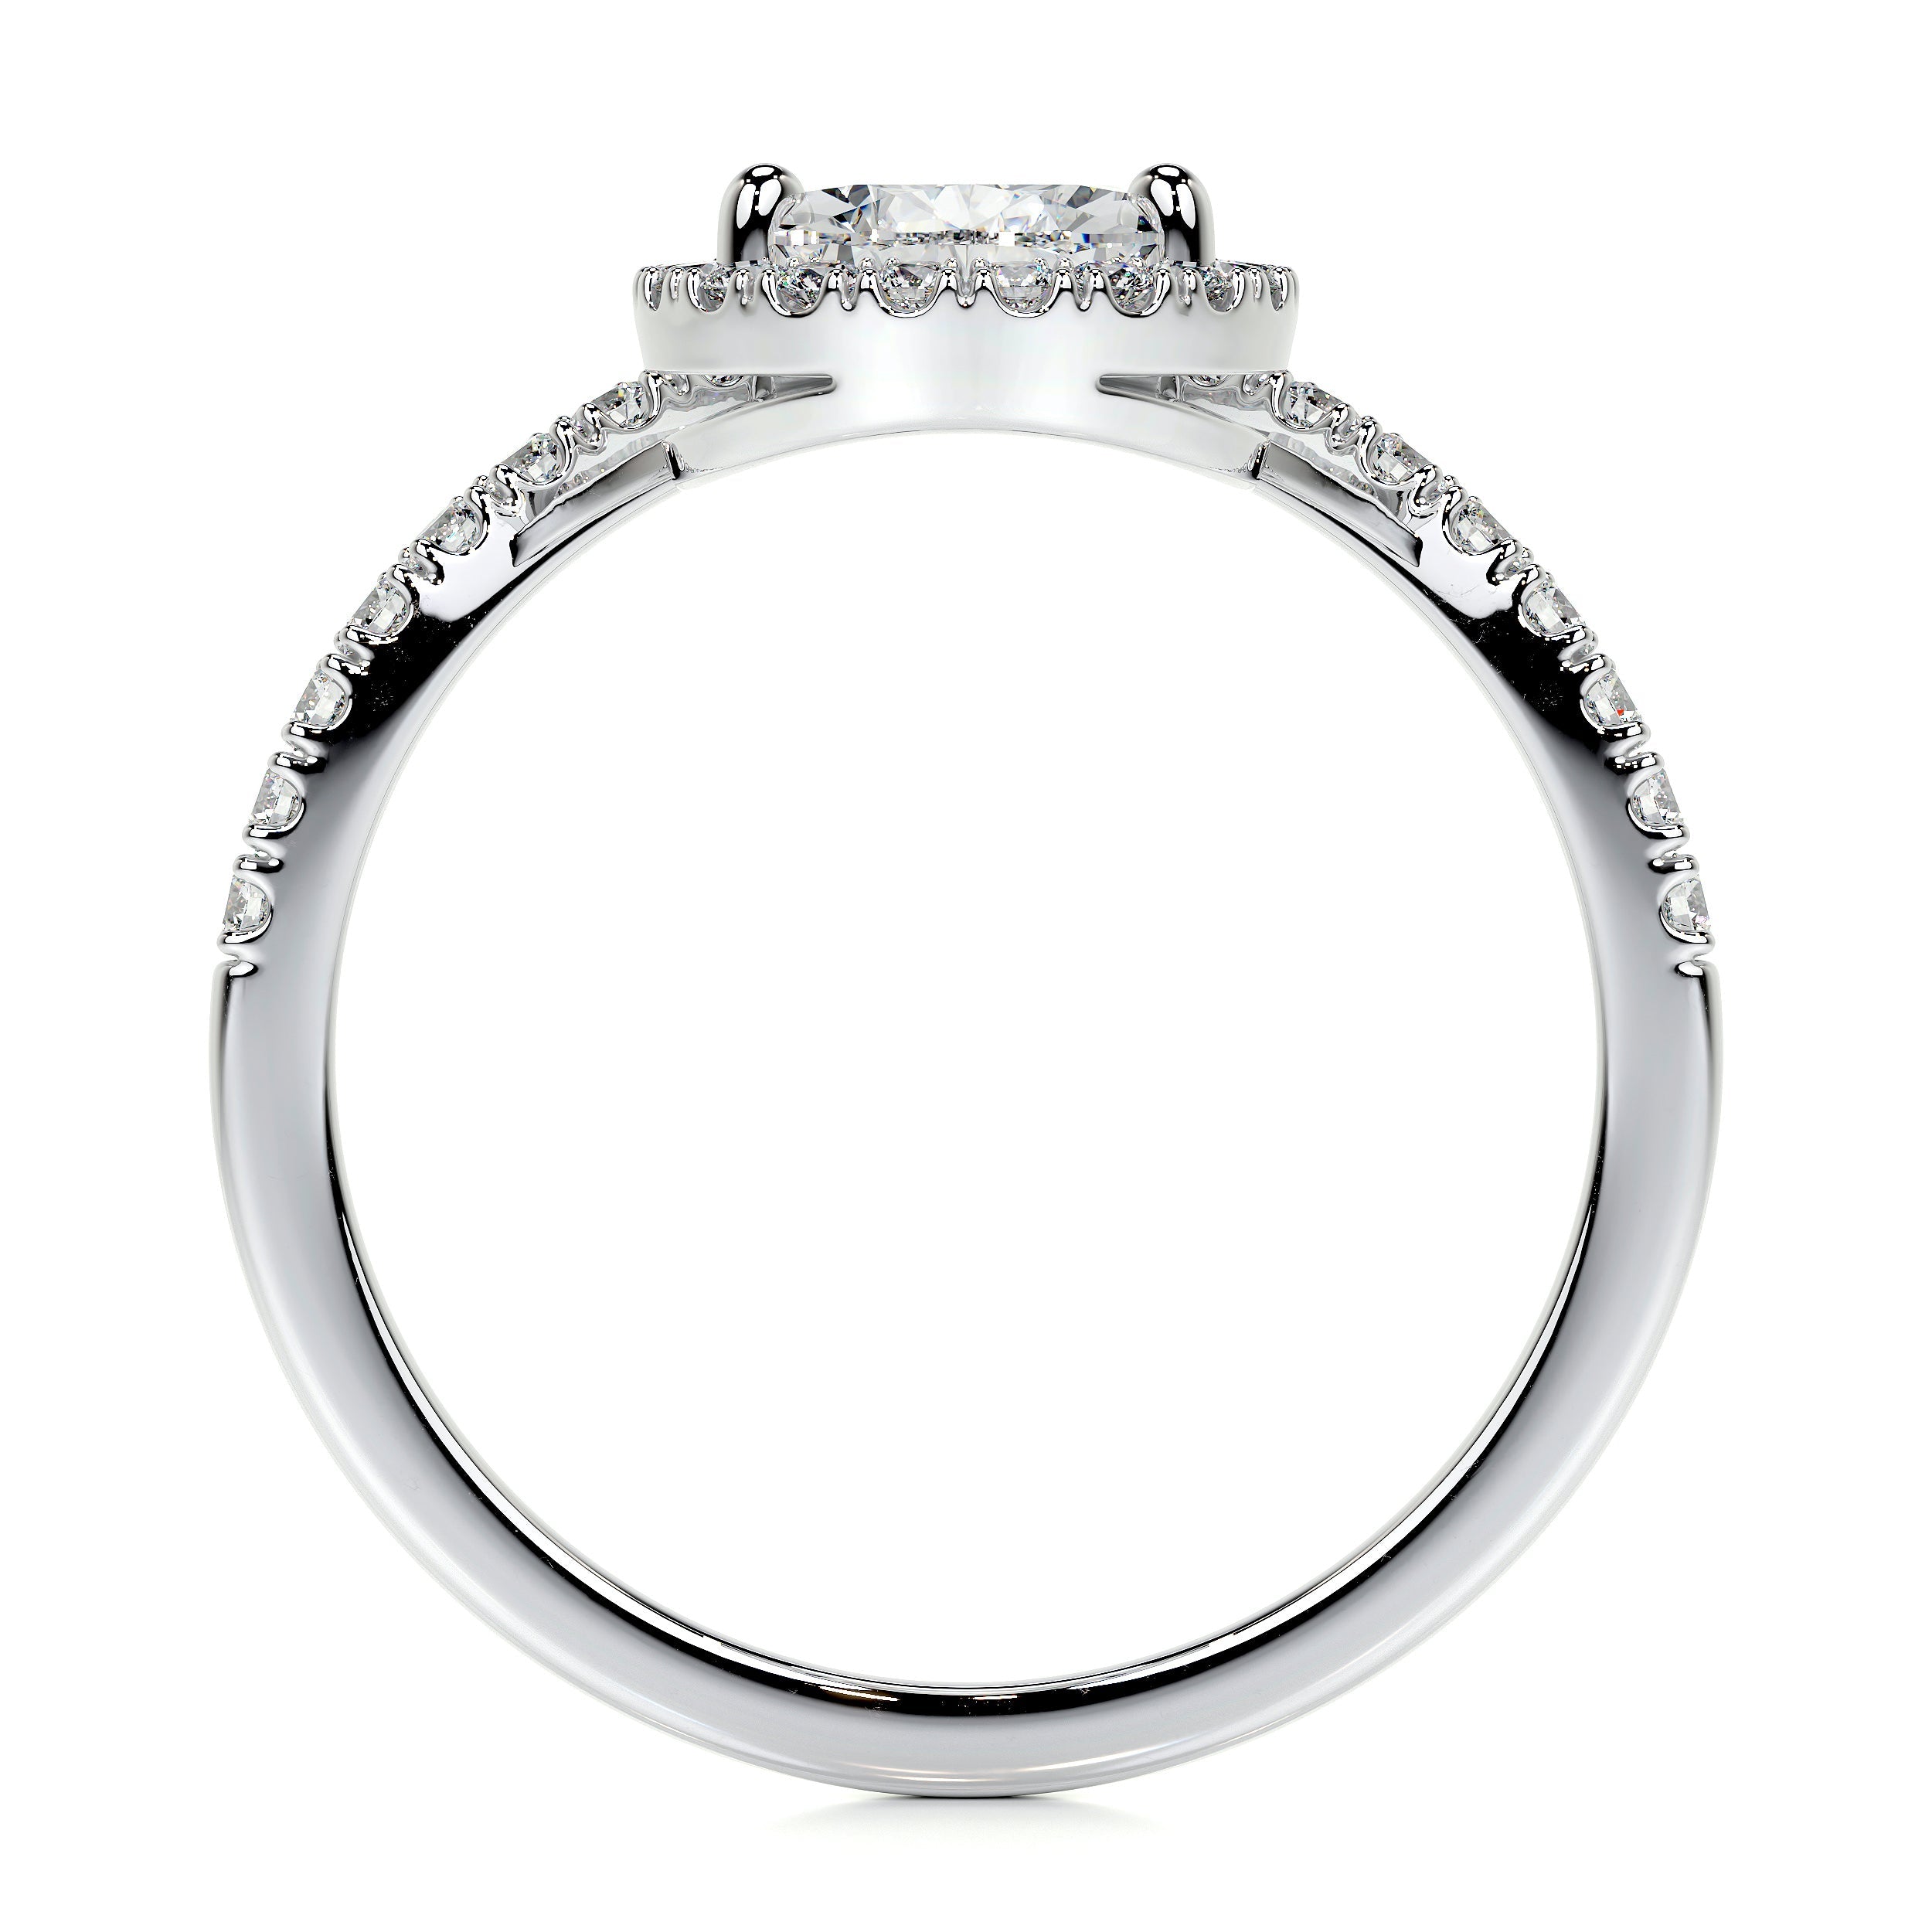 Miranda Lab Grown Diamond Ring   (1.55 Carat) -18K White Gold